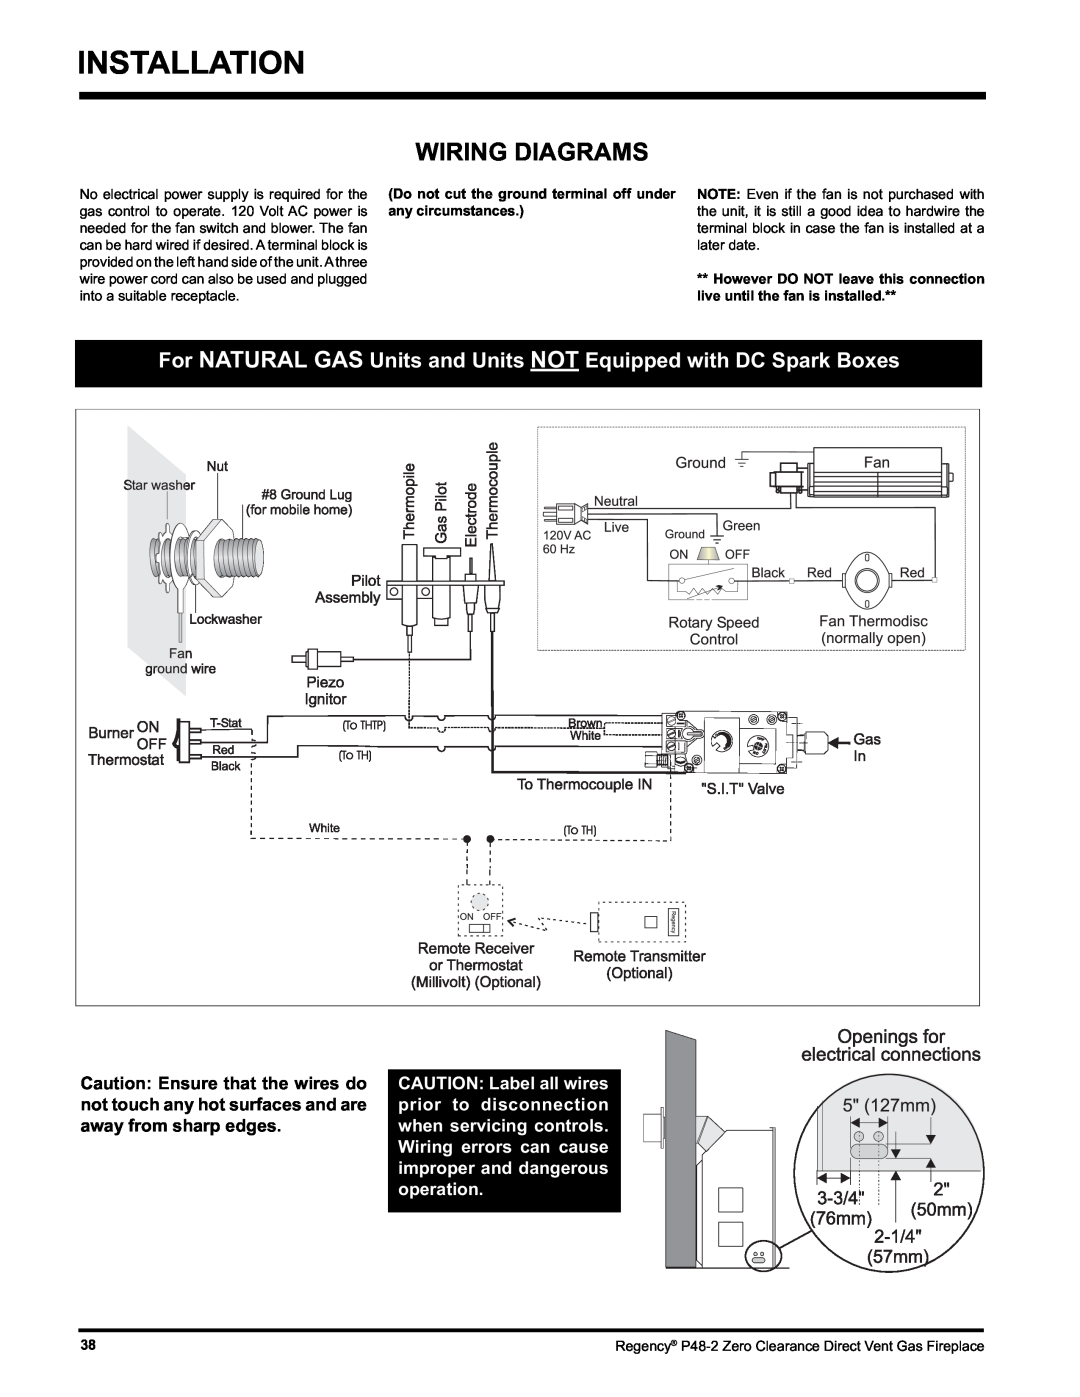 Regency P48-2 installation manual Installation, Wiring Diagrams 